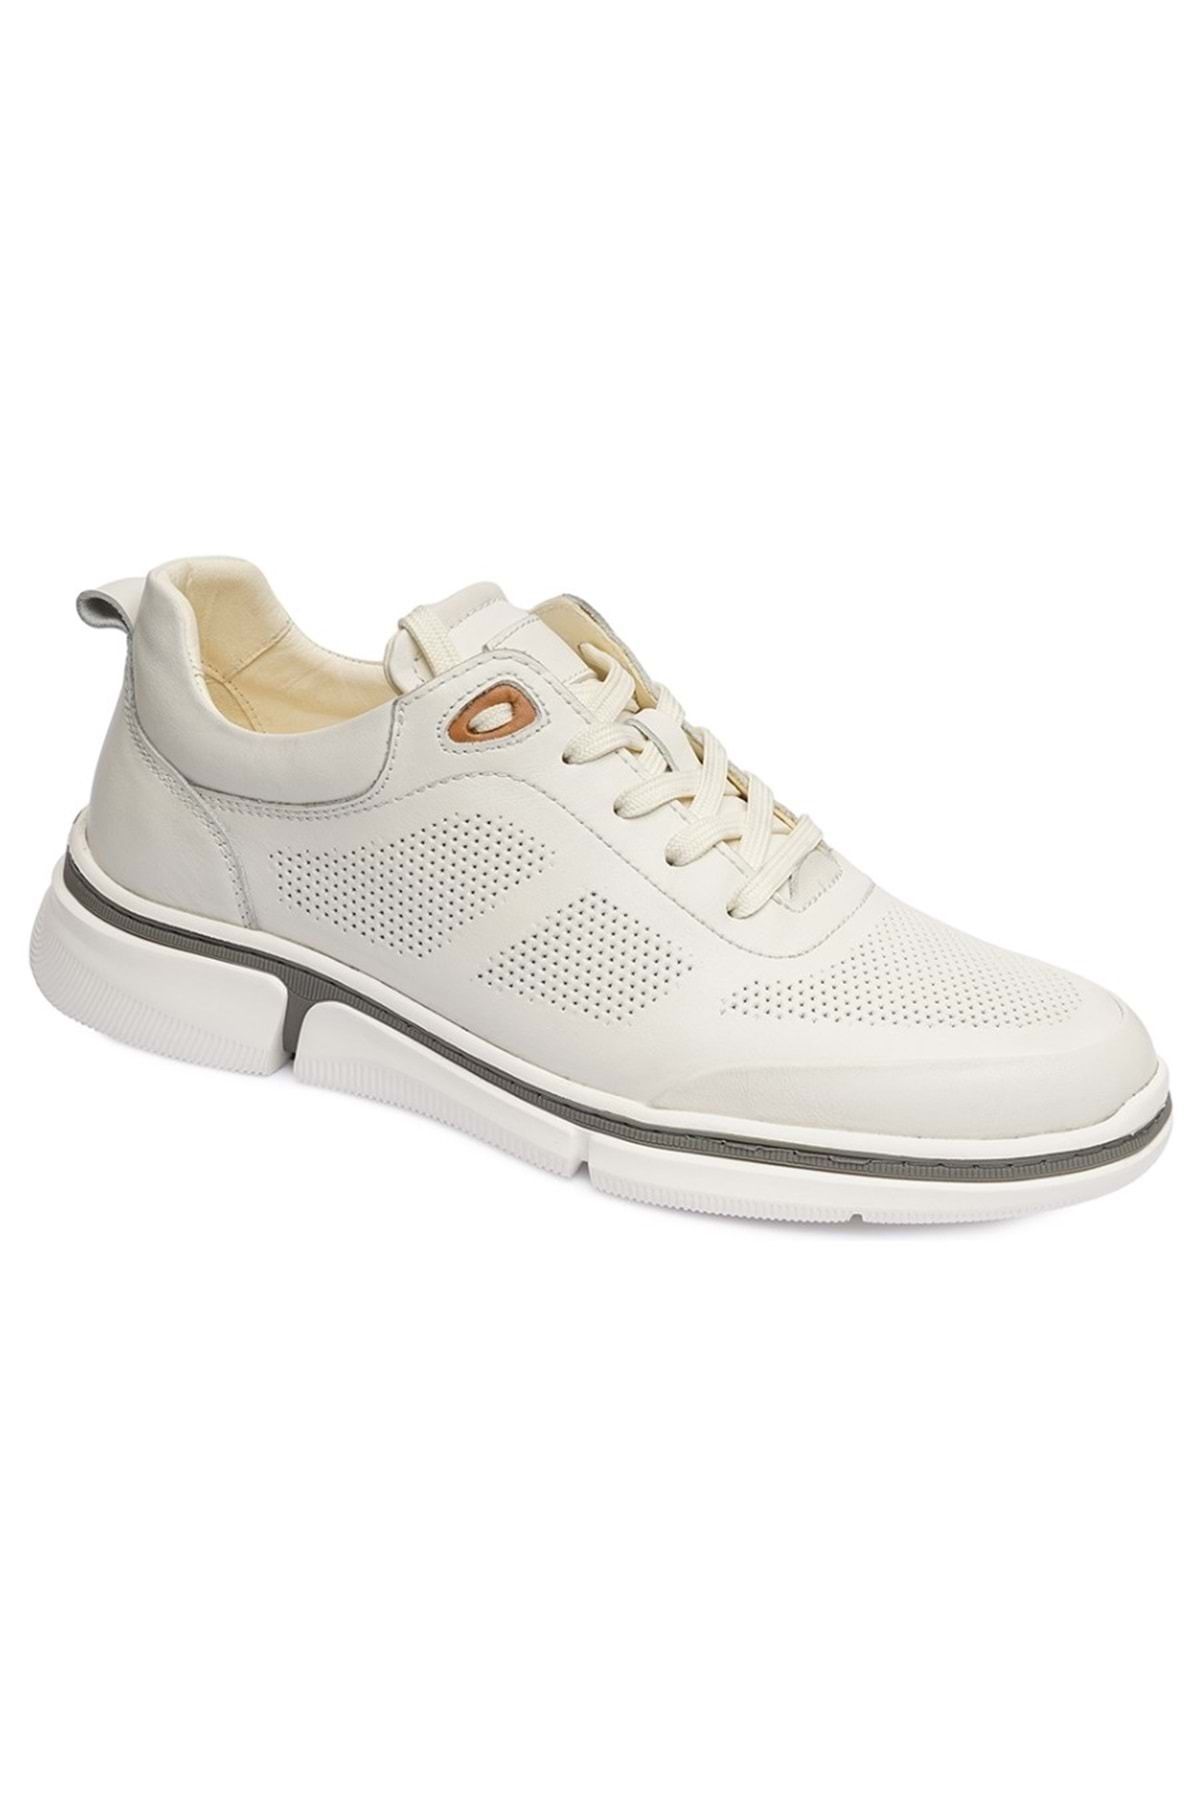 Greyder 64545 Comfort Sneaker Casual Erkek Ayakkabı Beyaz